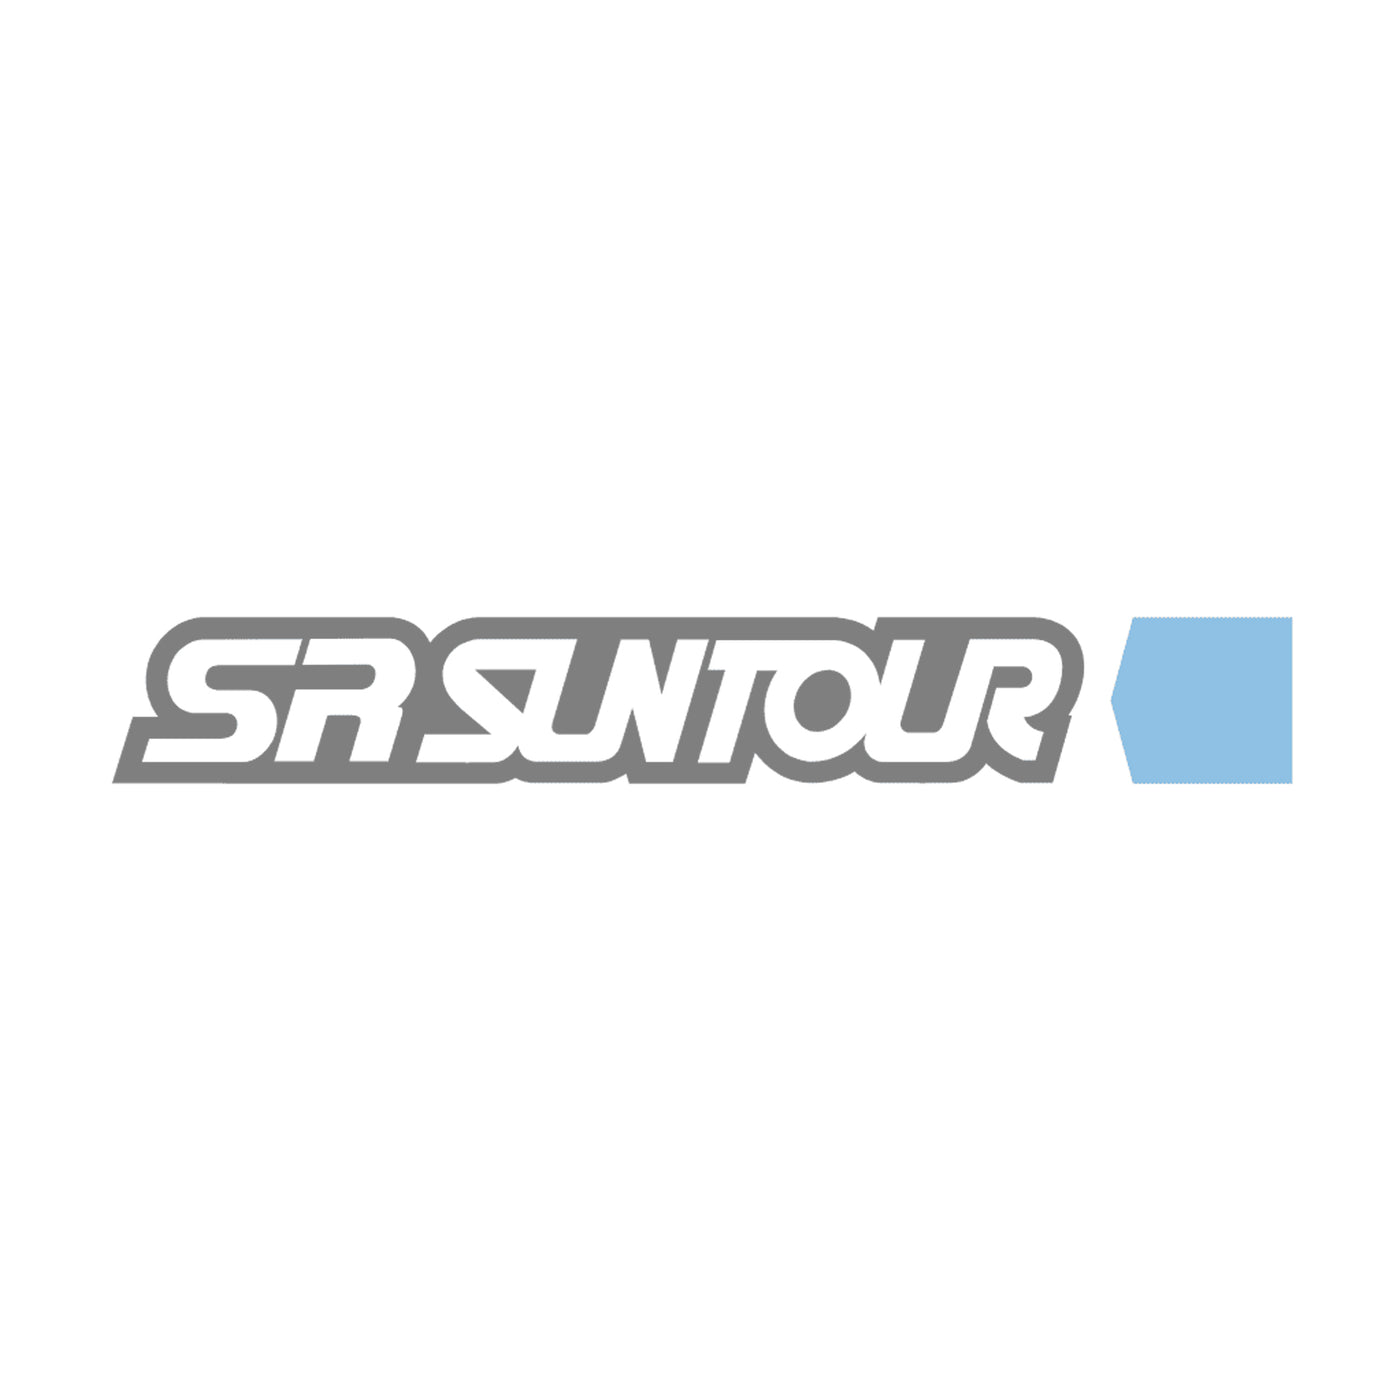 SR Suntour lower leg service kit (DIY)